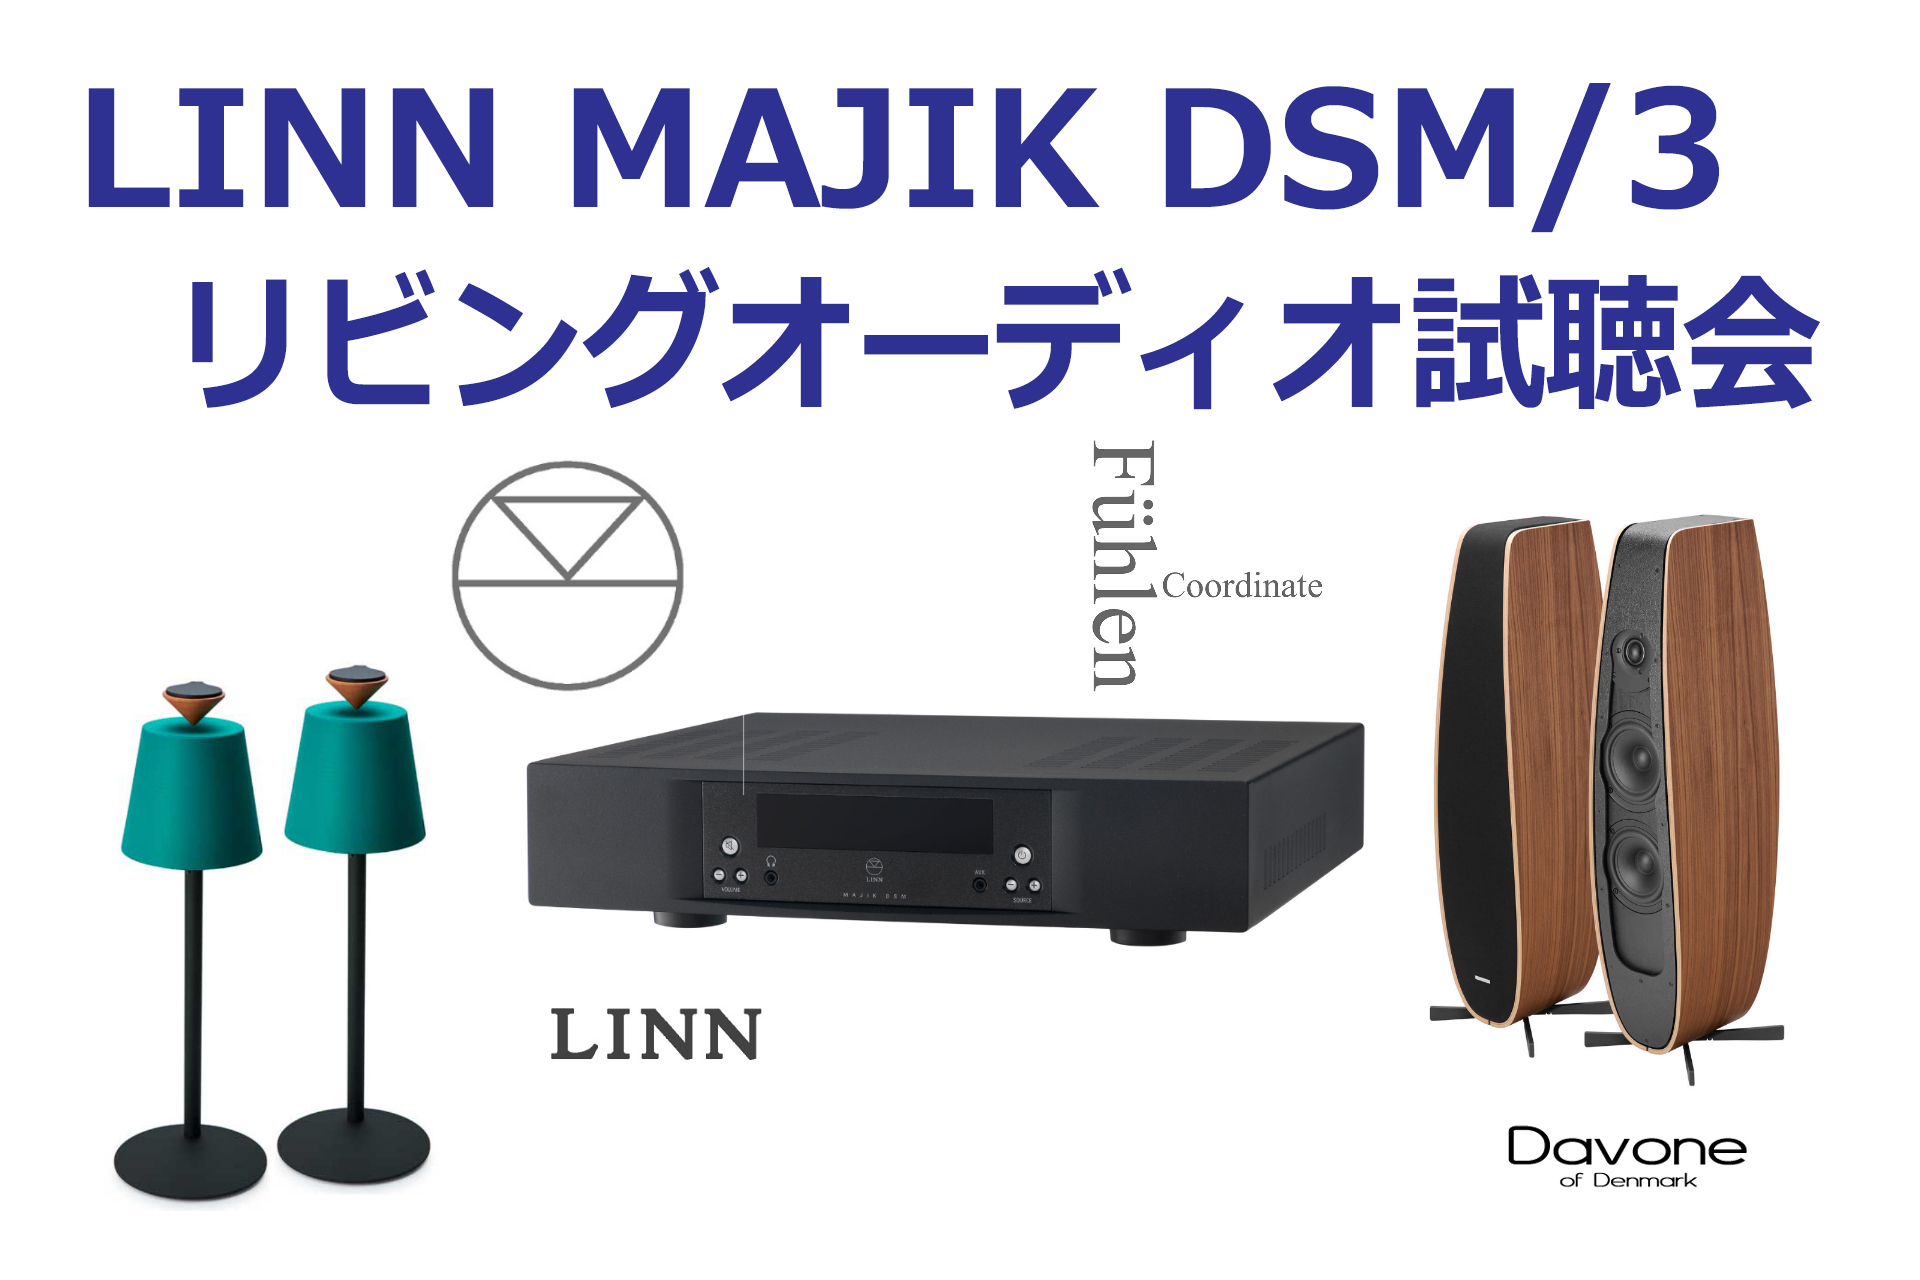 LINN MAJIK DSM/3 リビングオーディオ試聴会 & 商談会/オーディオ ...1920 x 1280